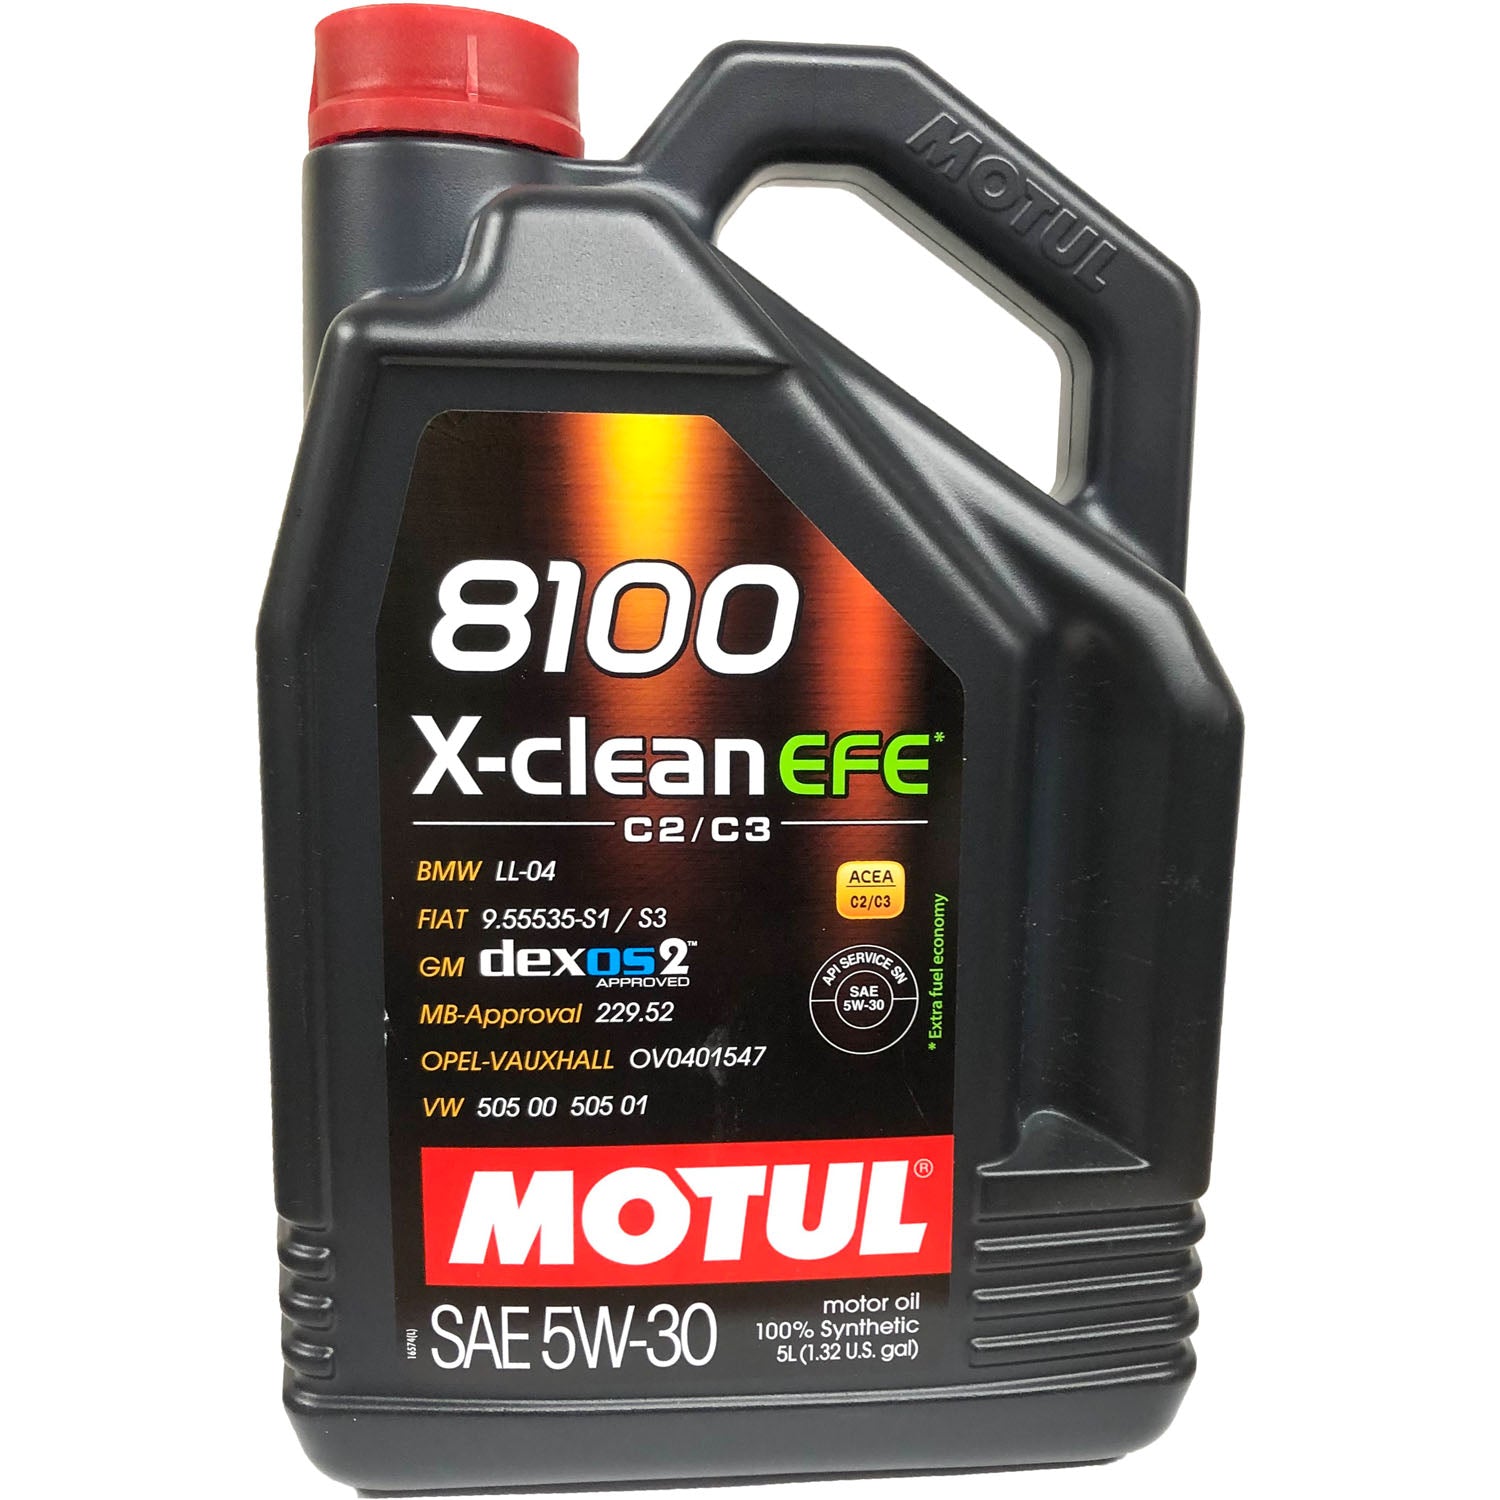 Motul 8100 X-Clean EFE Synthetic Motor Oil 5W30 - 5 Liter